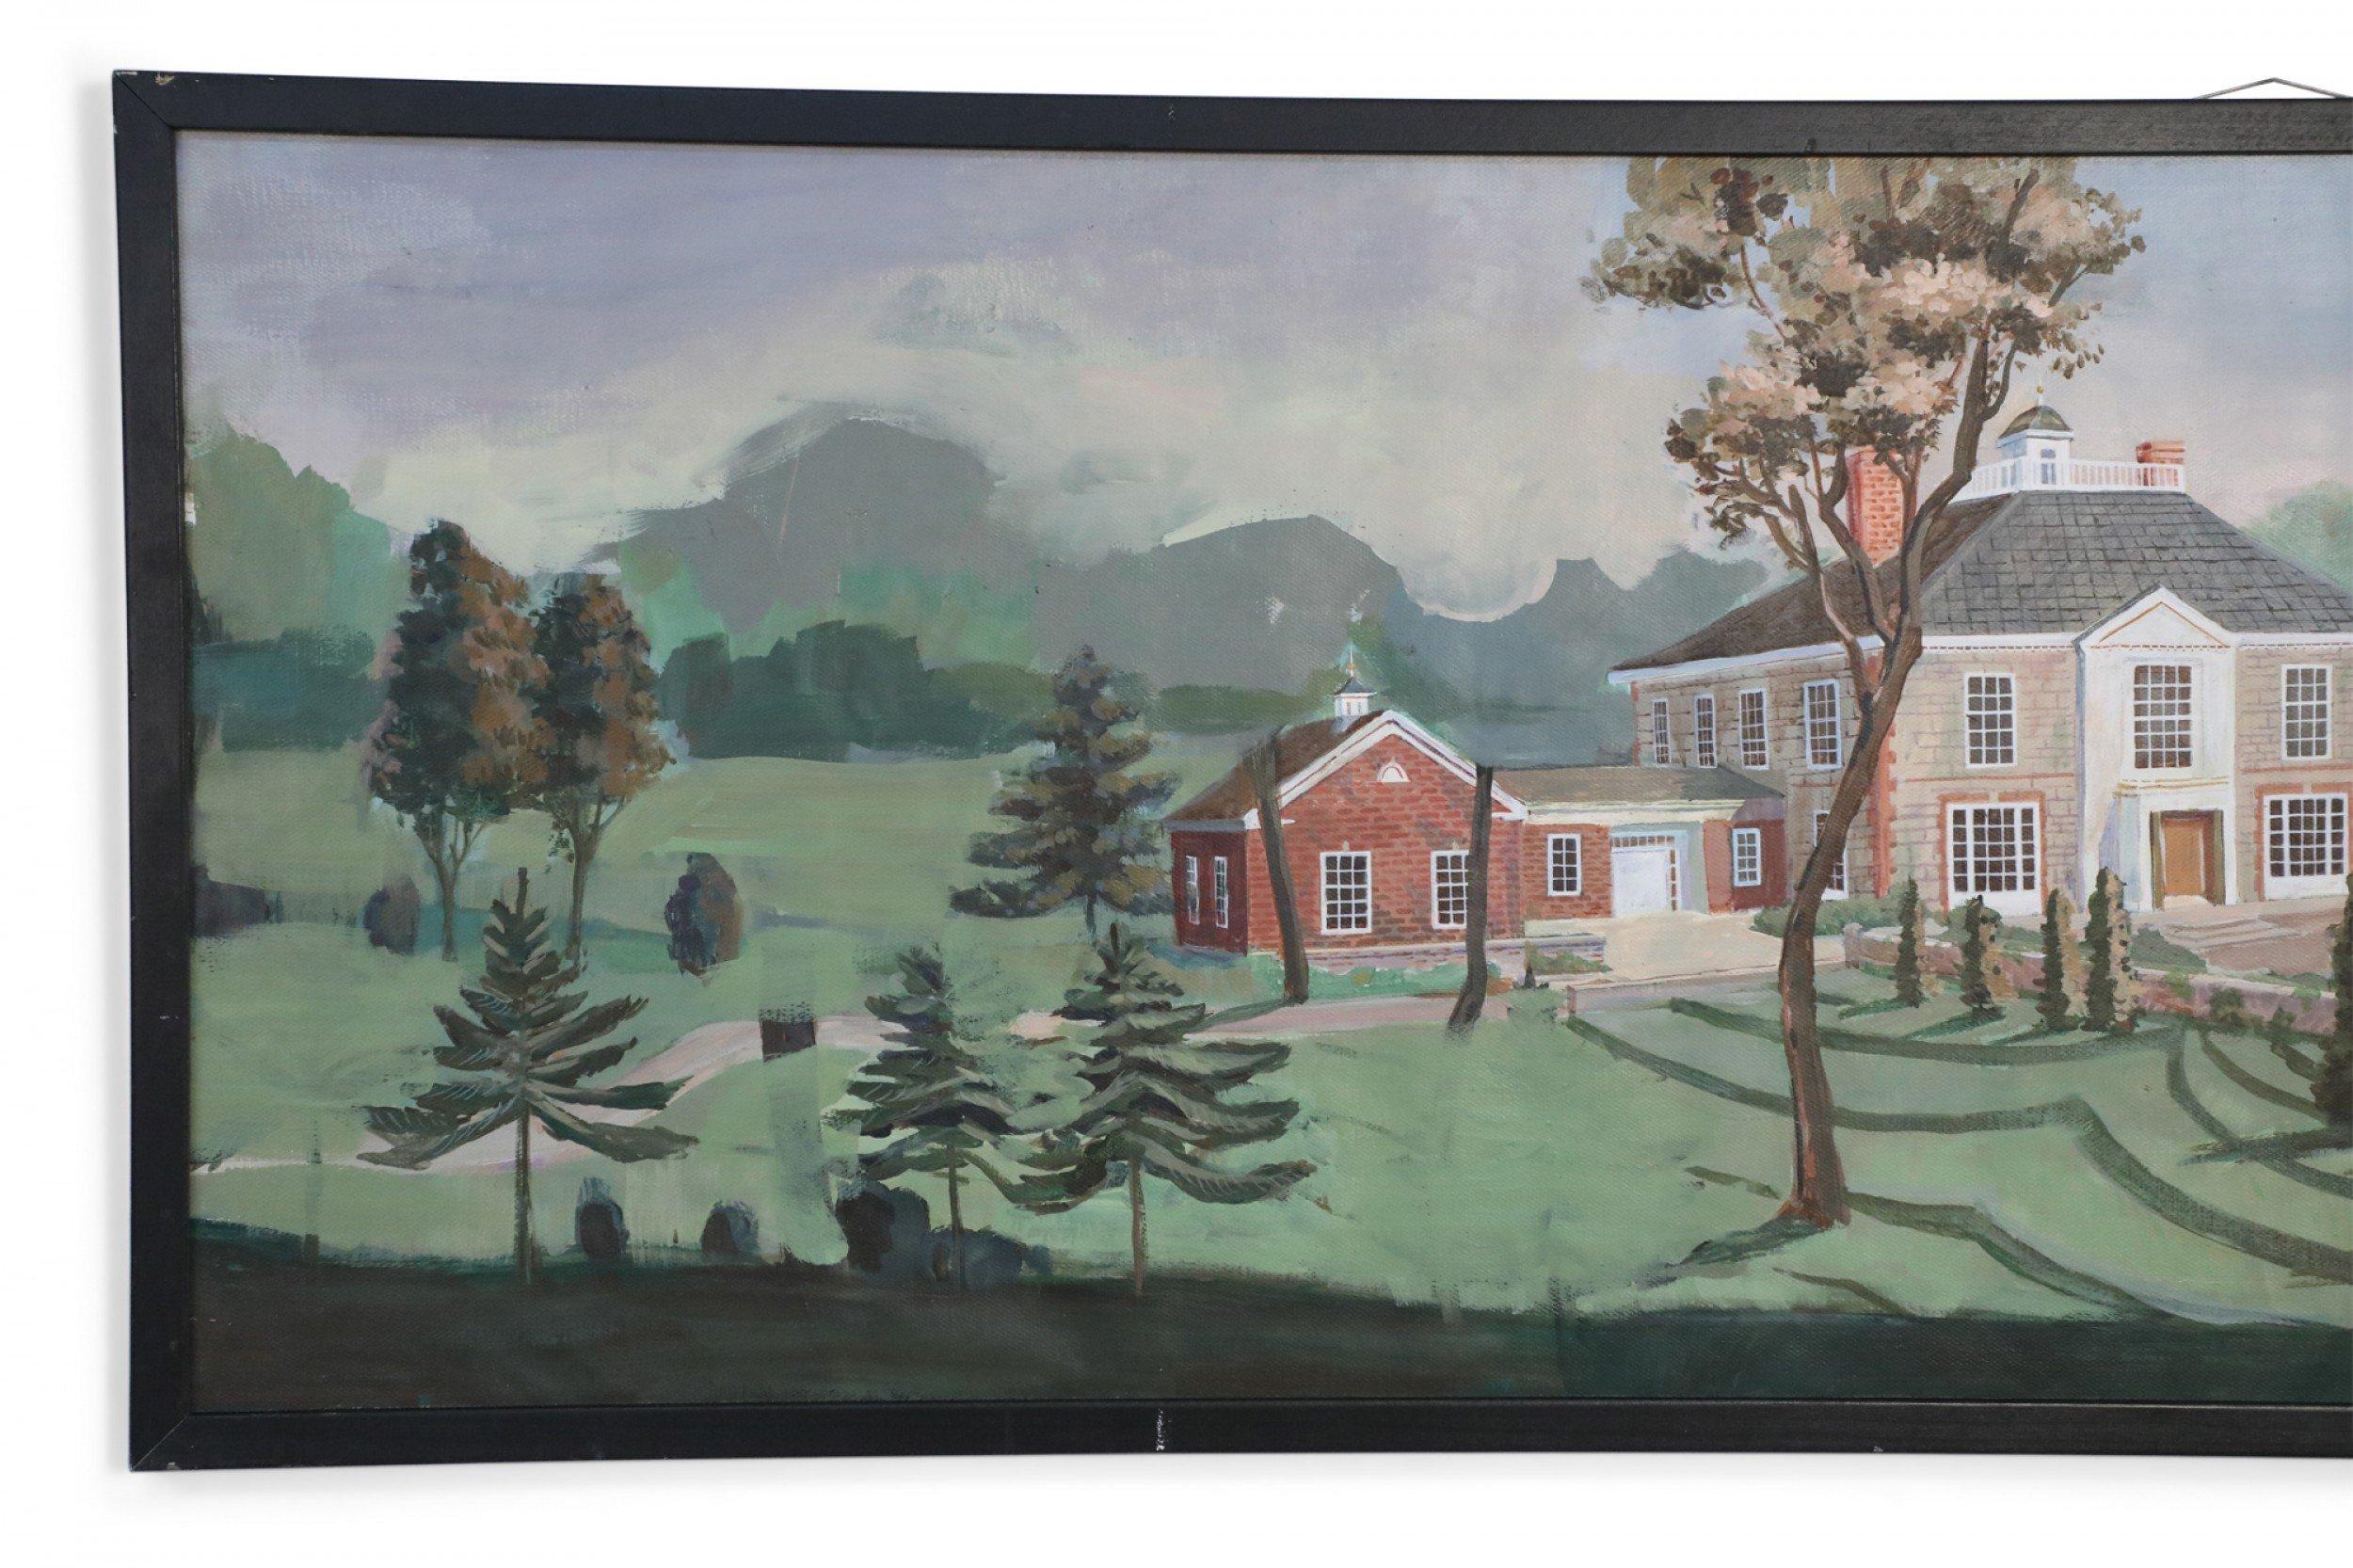 Peinture de paysage panoramique d'époque (20e siècle) représentant un manoir et les jardins environnants sur une toile rectangulaire large et étroite dans un cadre en bois peint en noir.